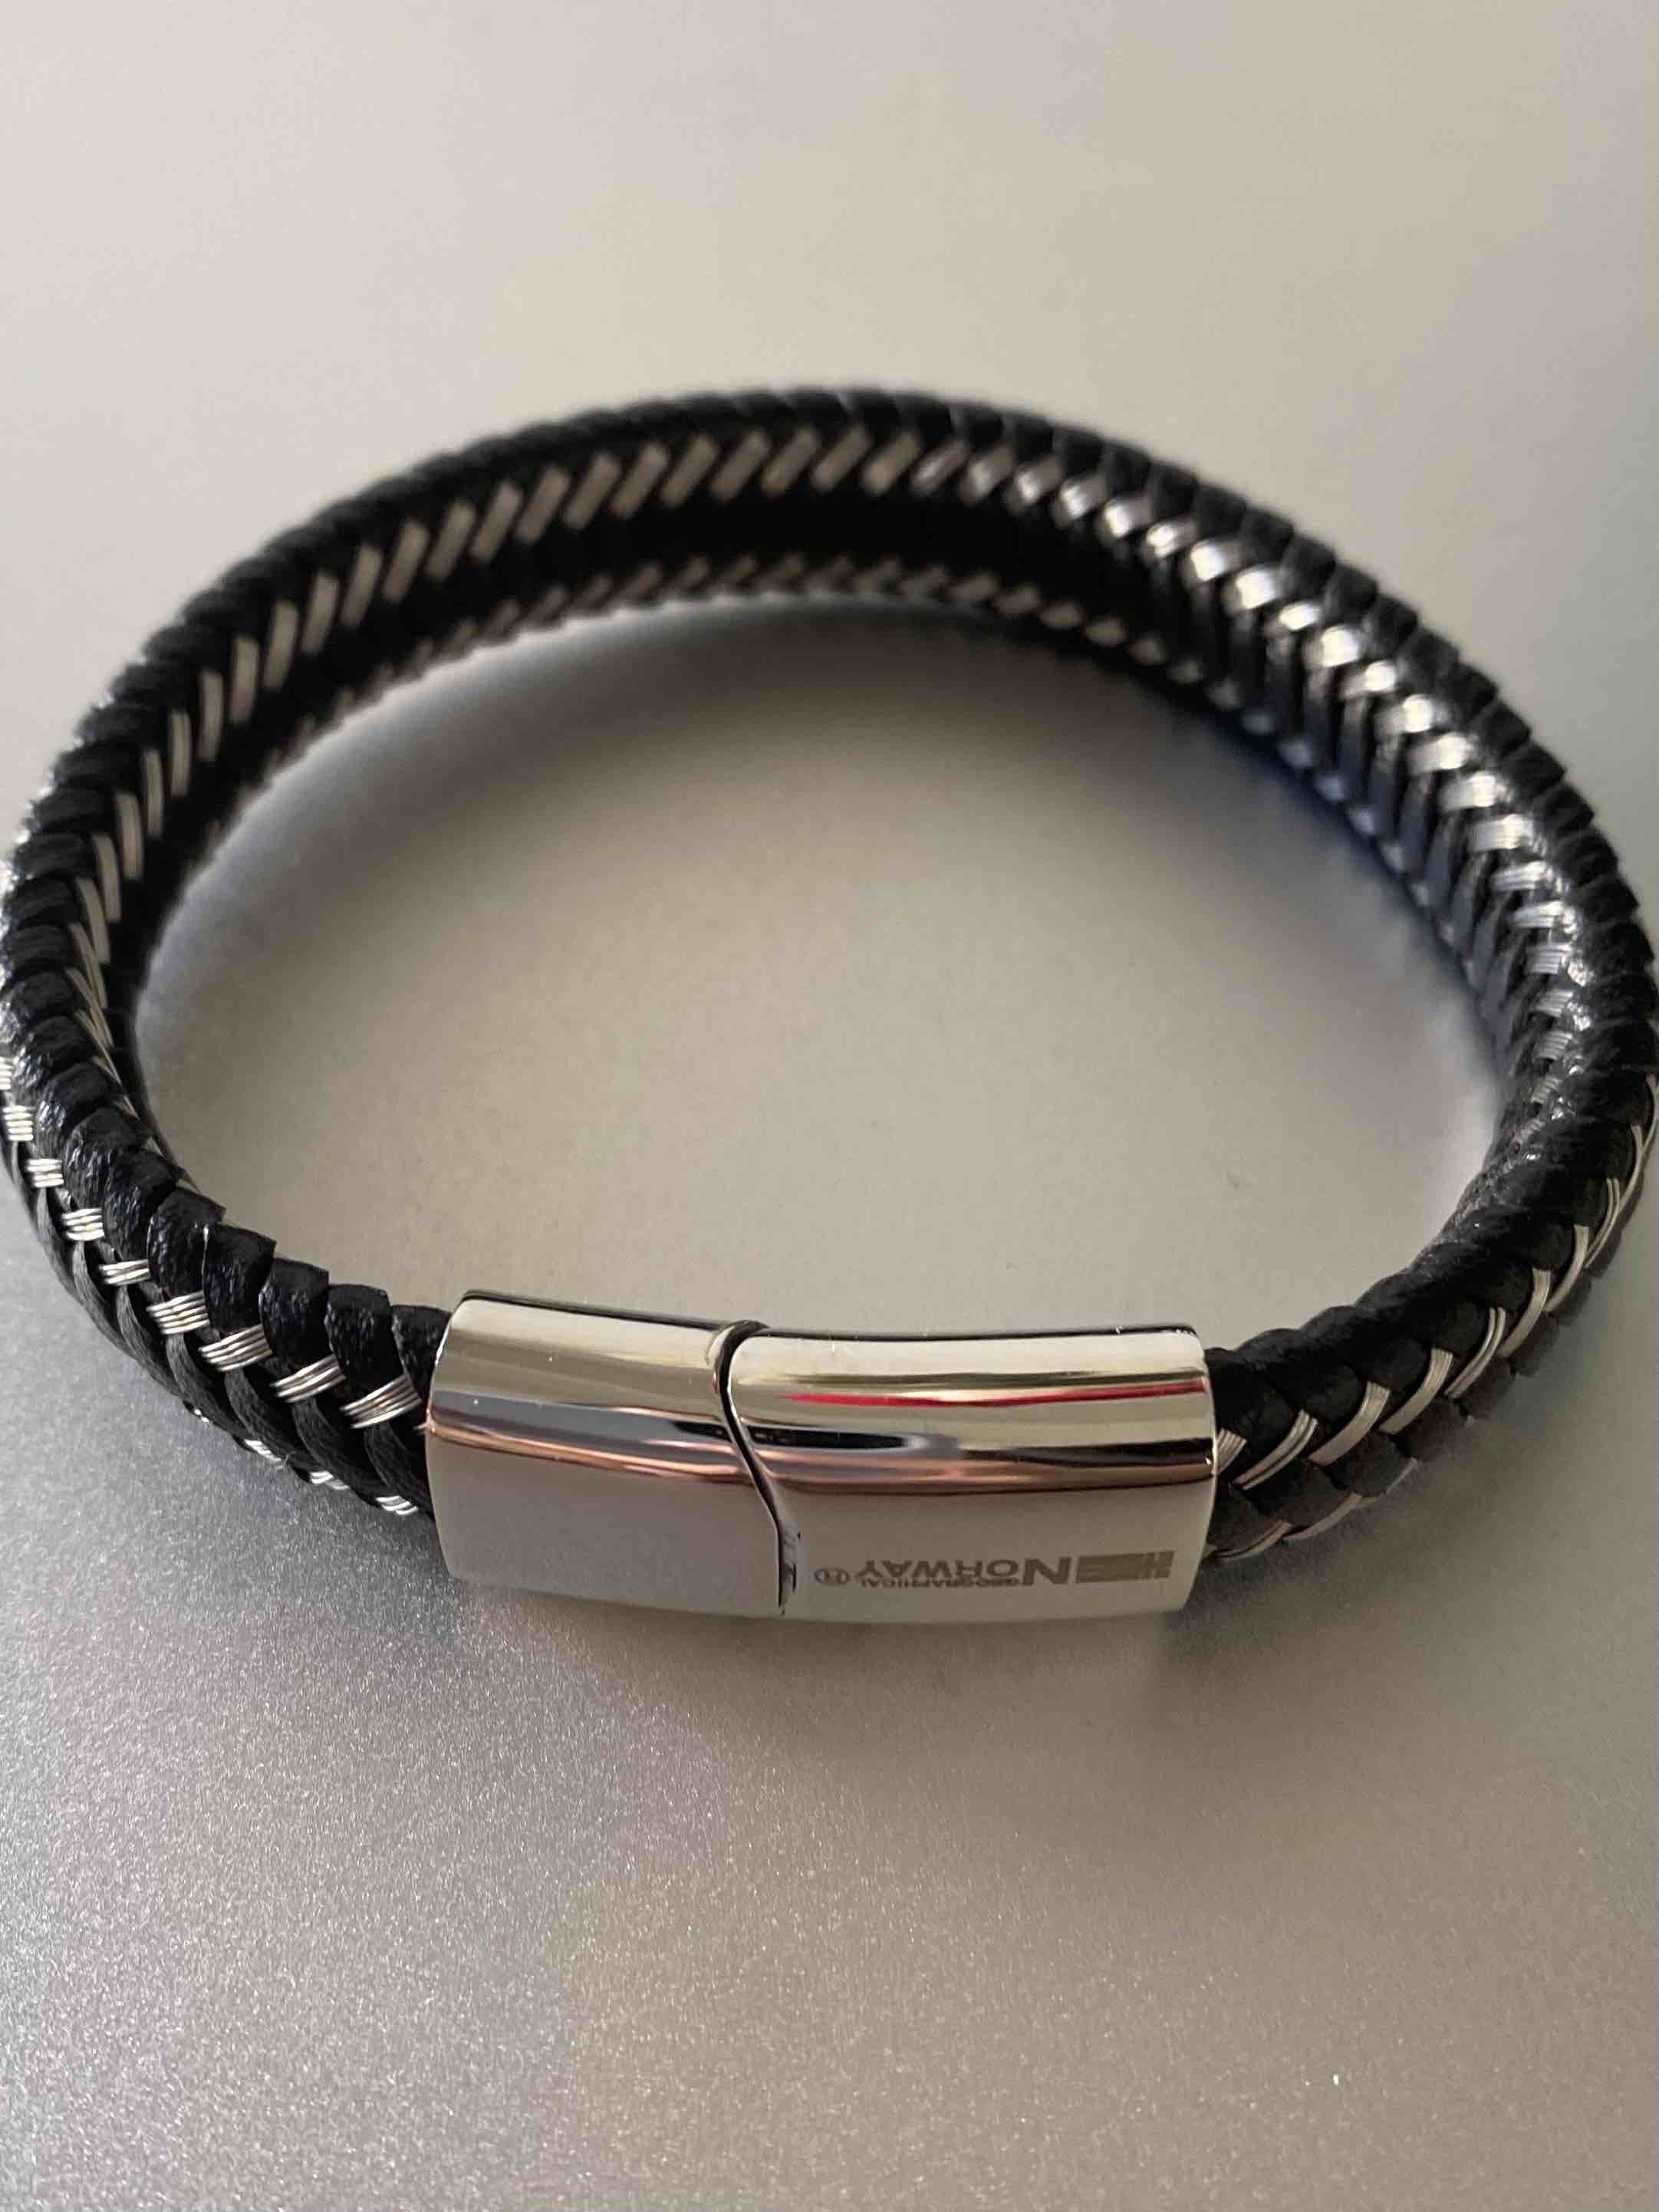 Bracelet Acier - Tressage cuir épais avec incrustations acier 